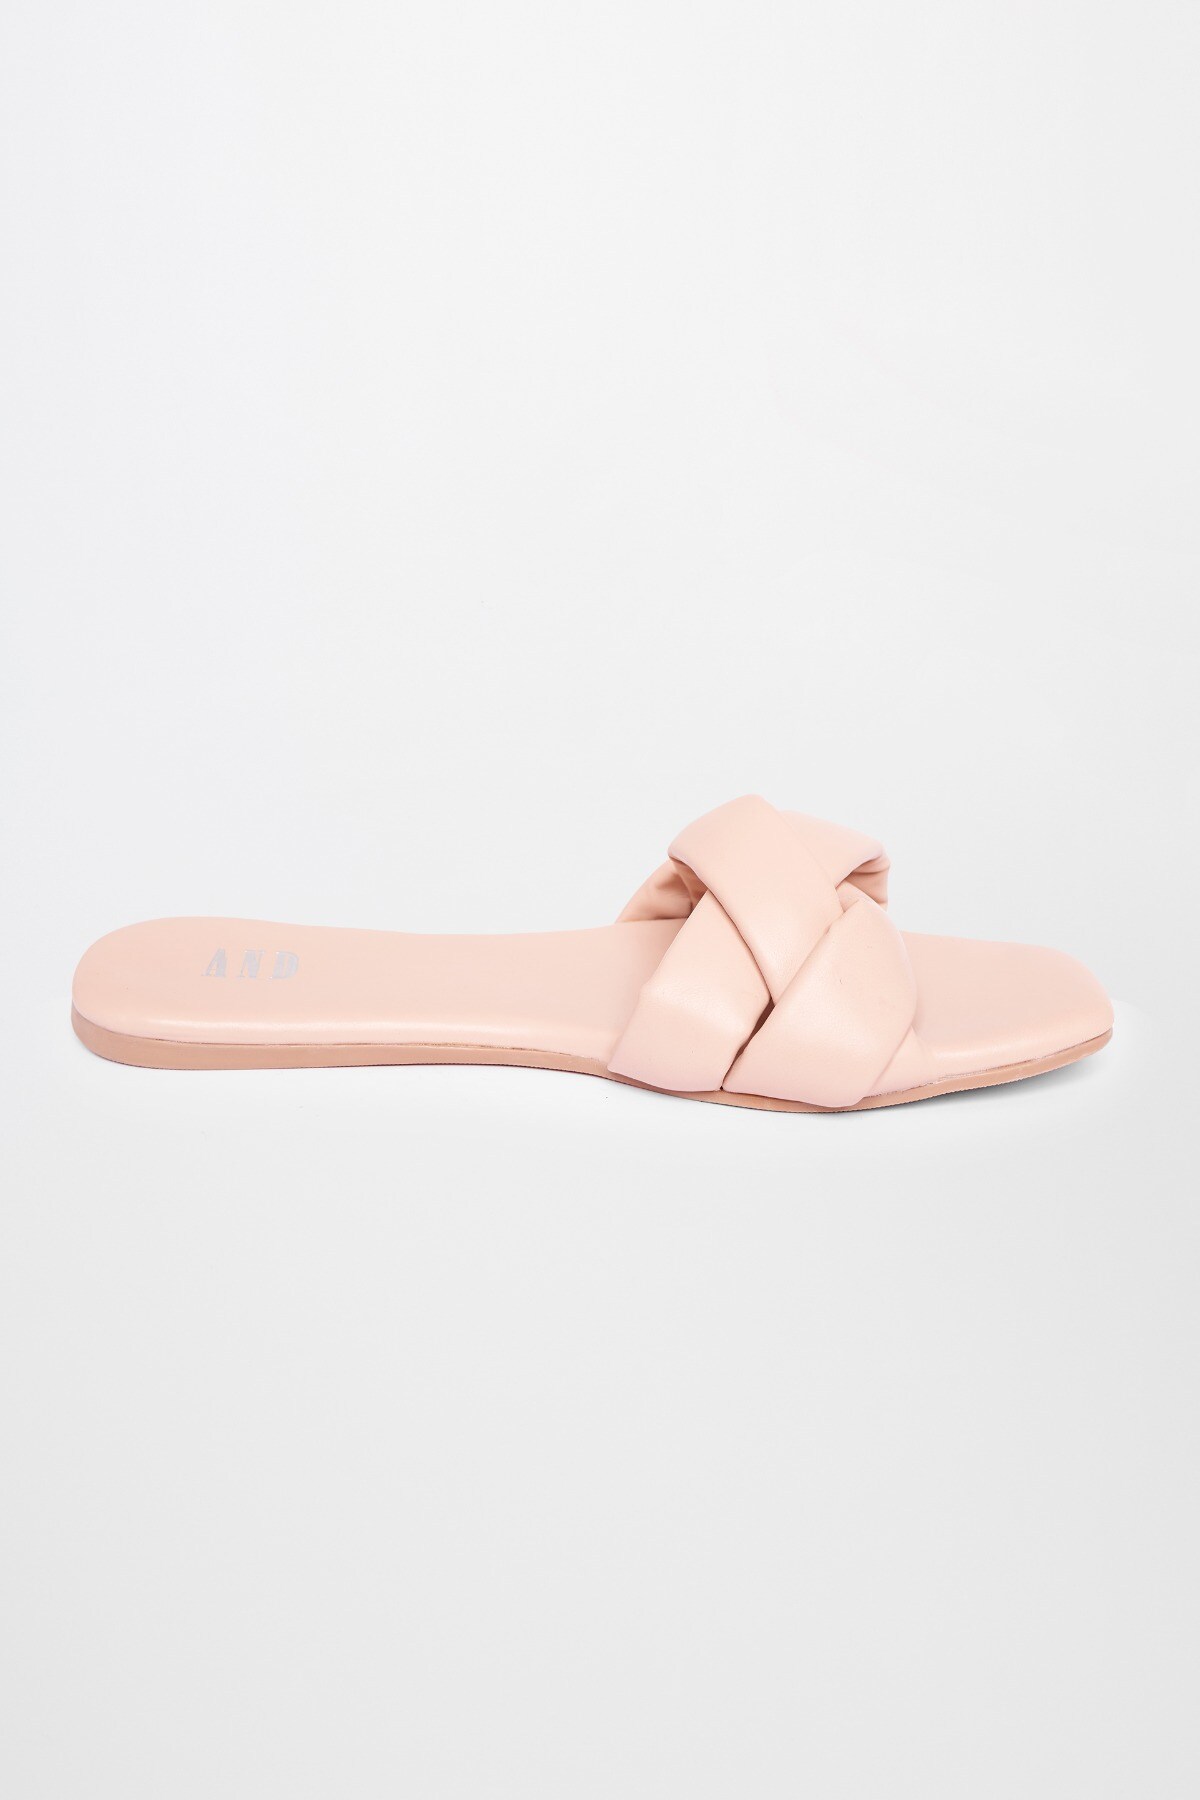 2 - Pink Sandal, image 3